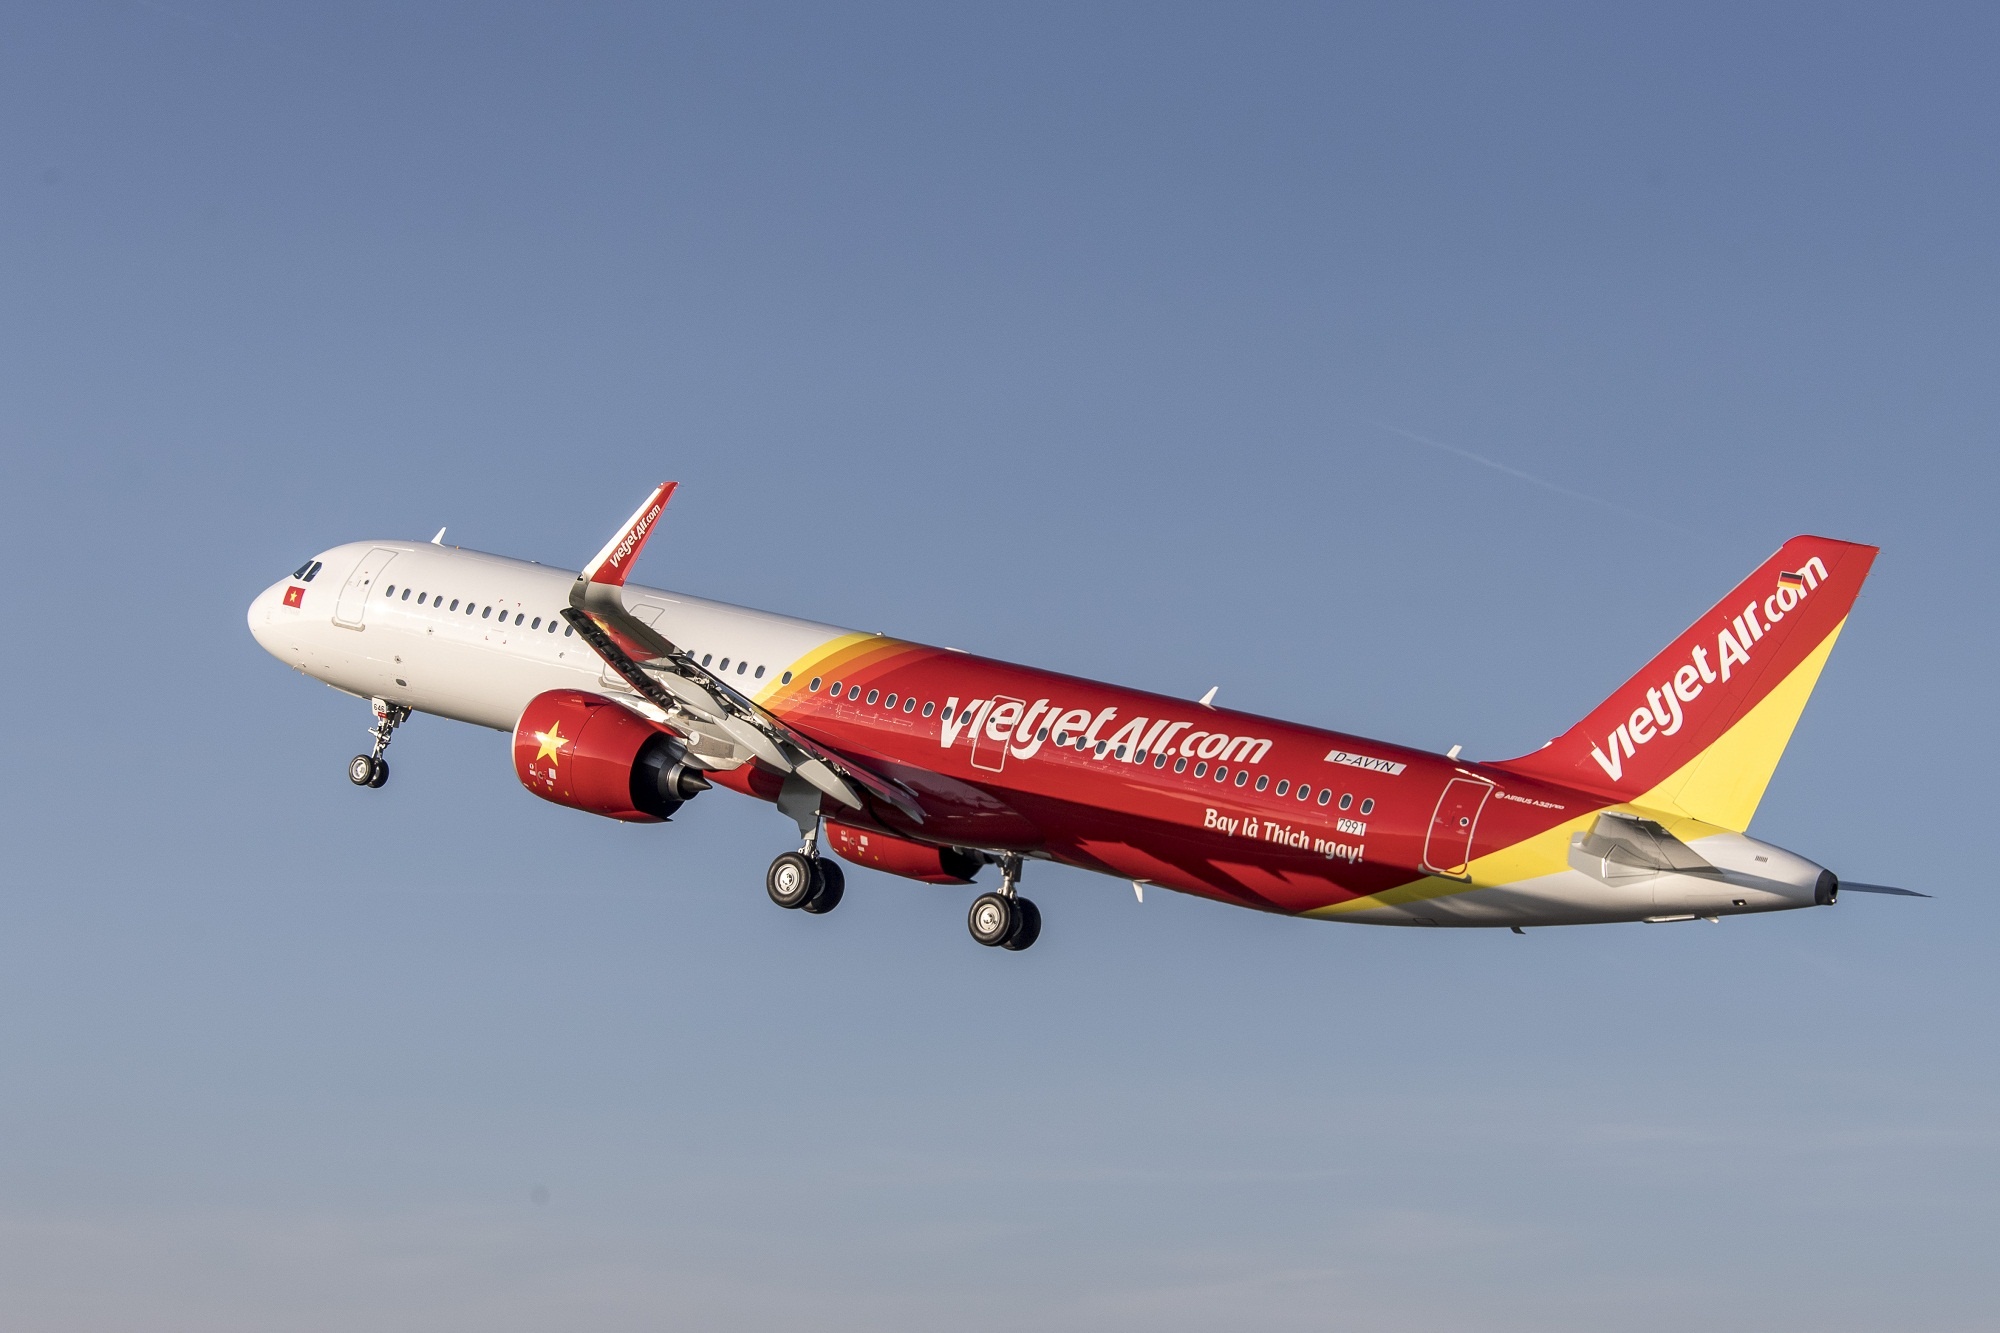 VietJetAir sử dụng công nghệ của Airbus khai thác chuyến bay